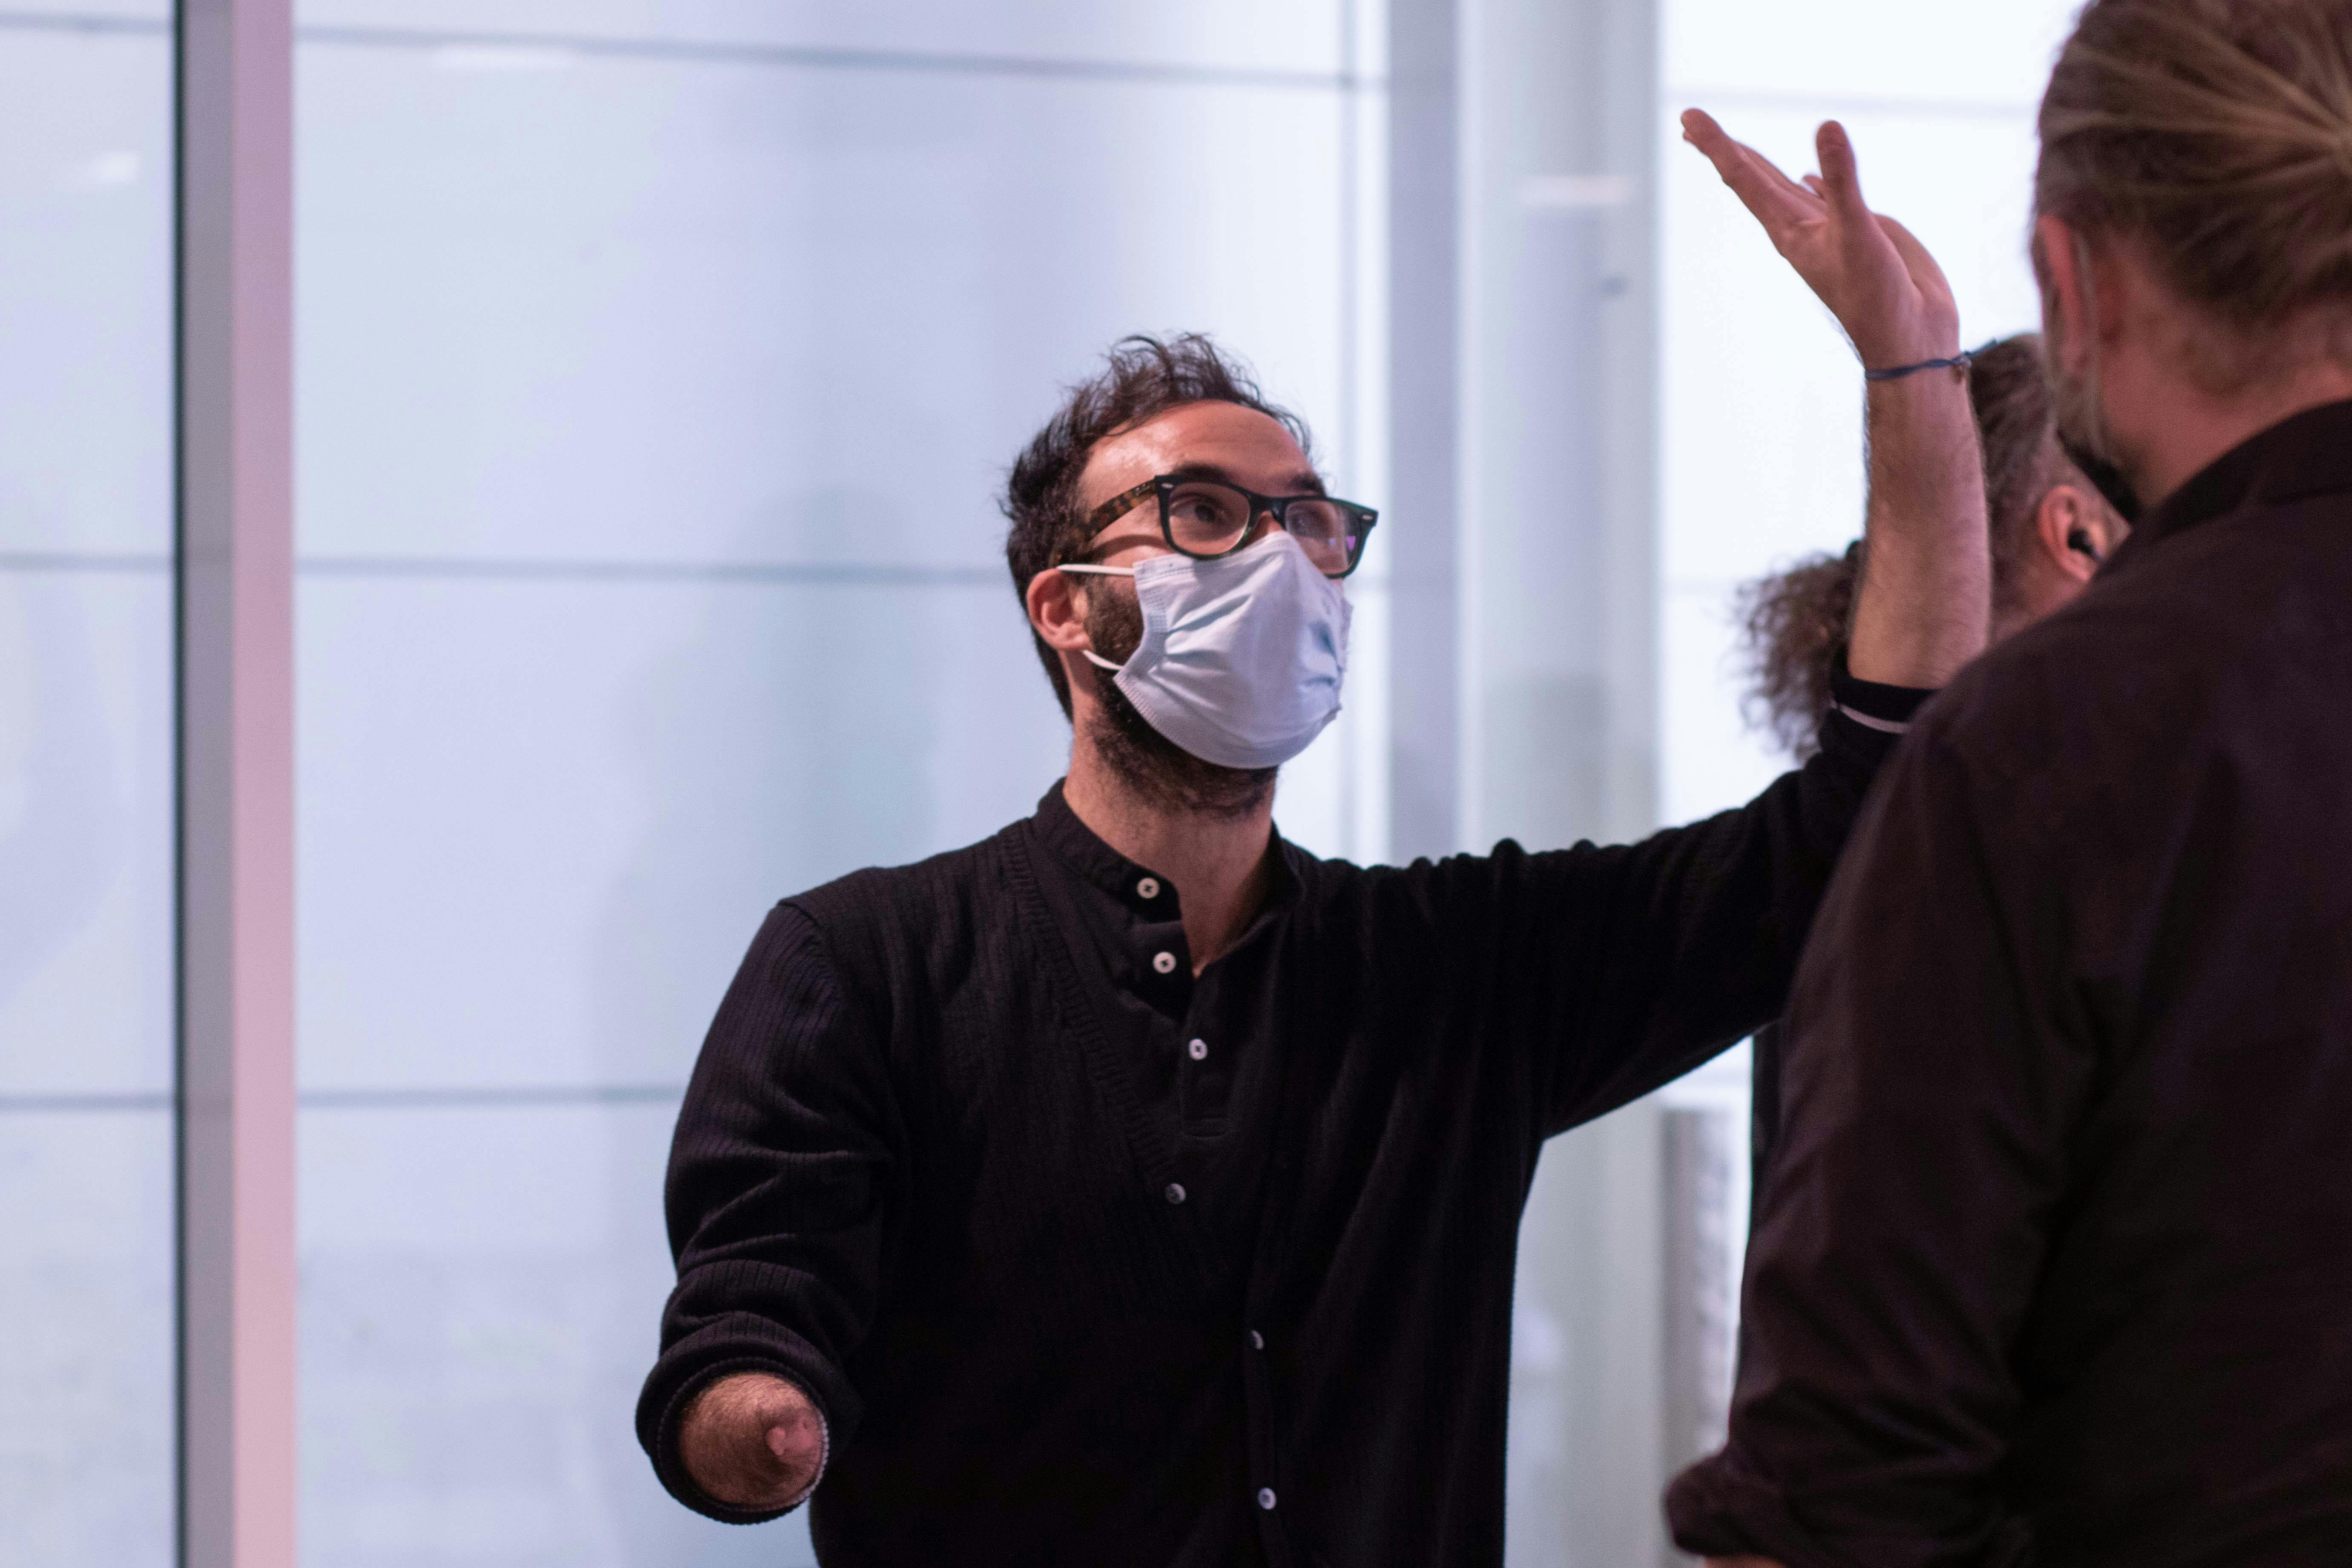 L'artista Aristide Rontini, partecipante al lab, mentre solleva il braccio sinistro verso l'alto con la mano aperta.